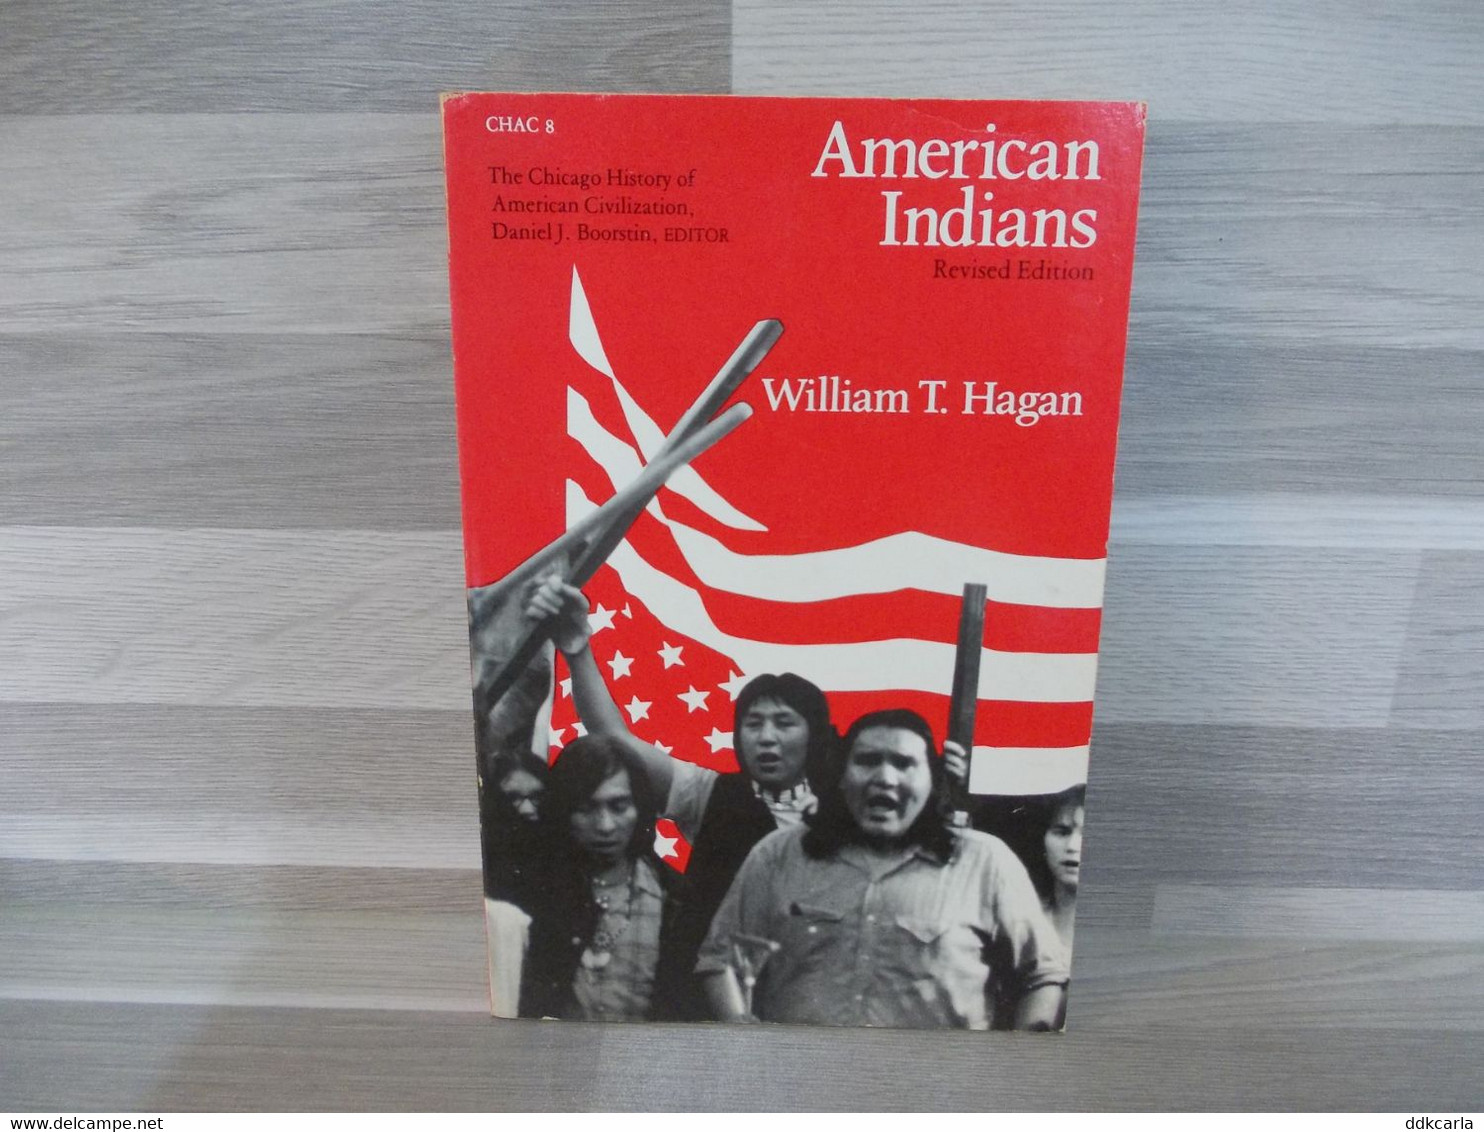 Boek - American Indians - Revised Edition - William T. Hagan - 1950-oggi